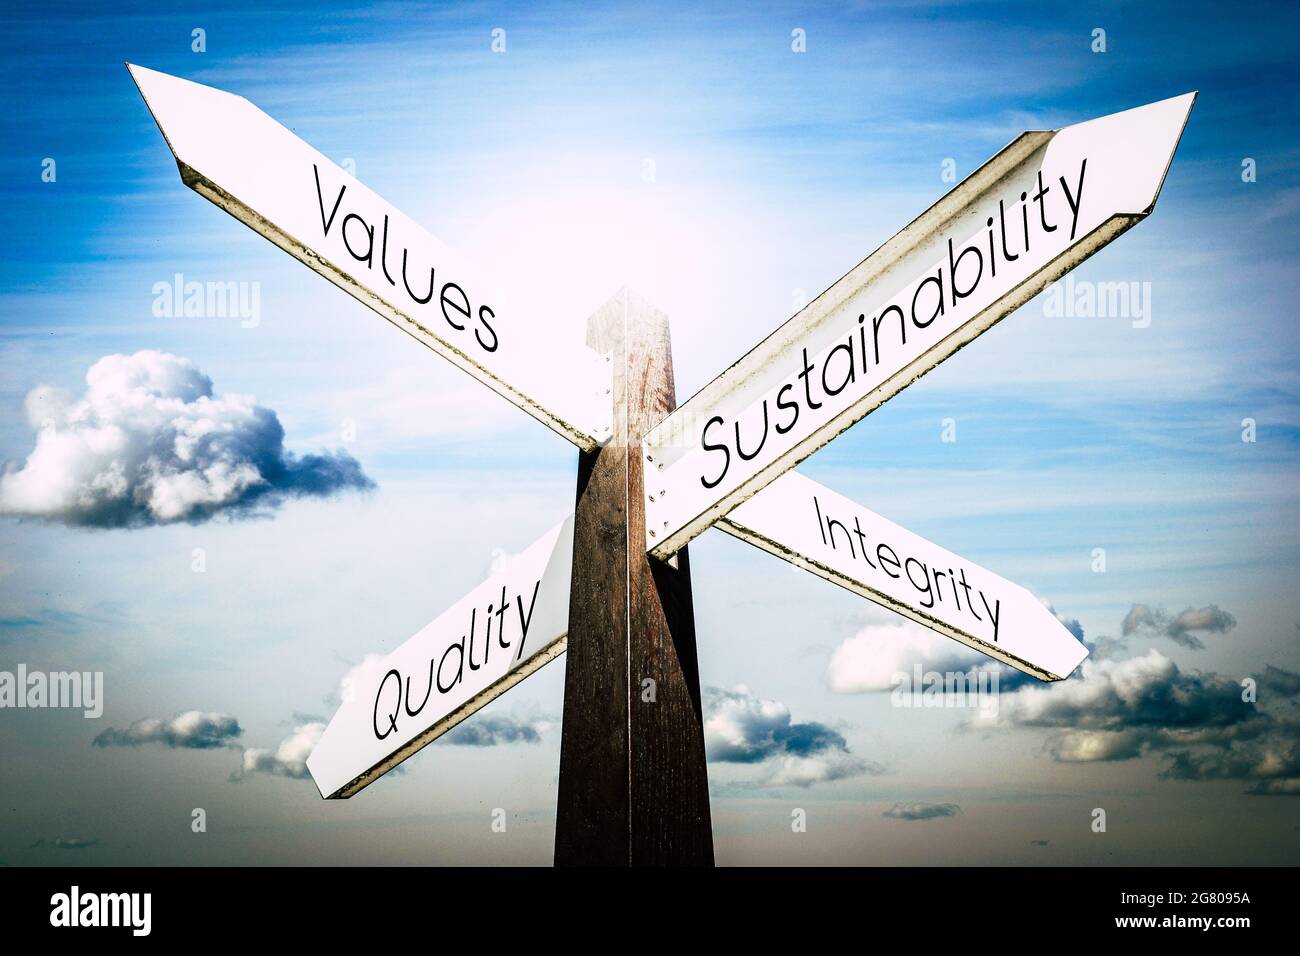 Valores, sostenibilidad, calidad, concepto de integridad - señal con cuatro flechas Foto de stock